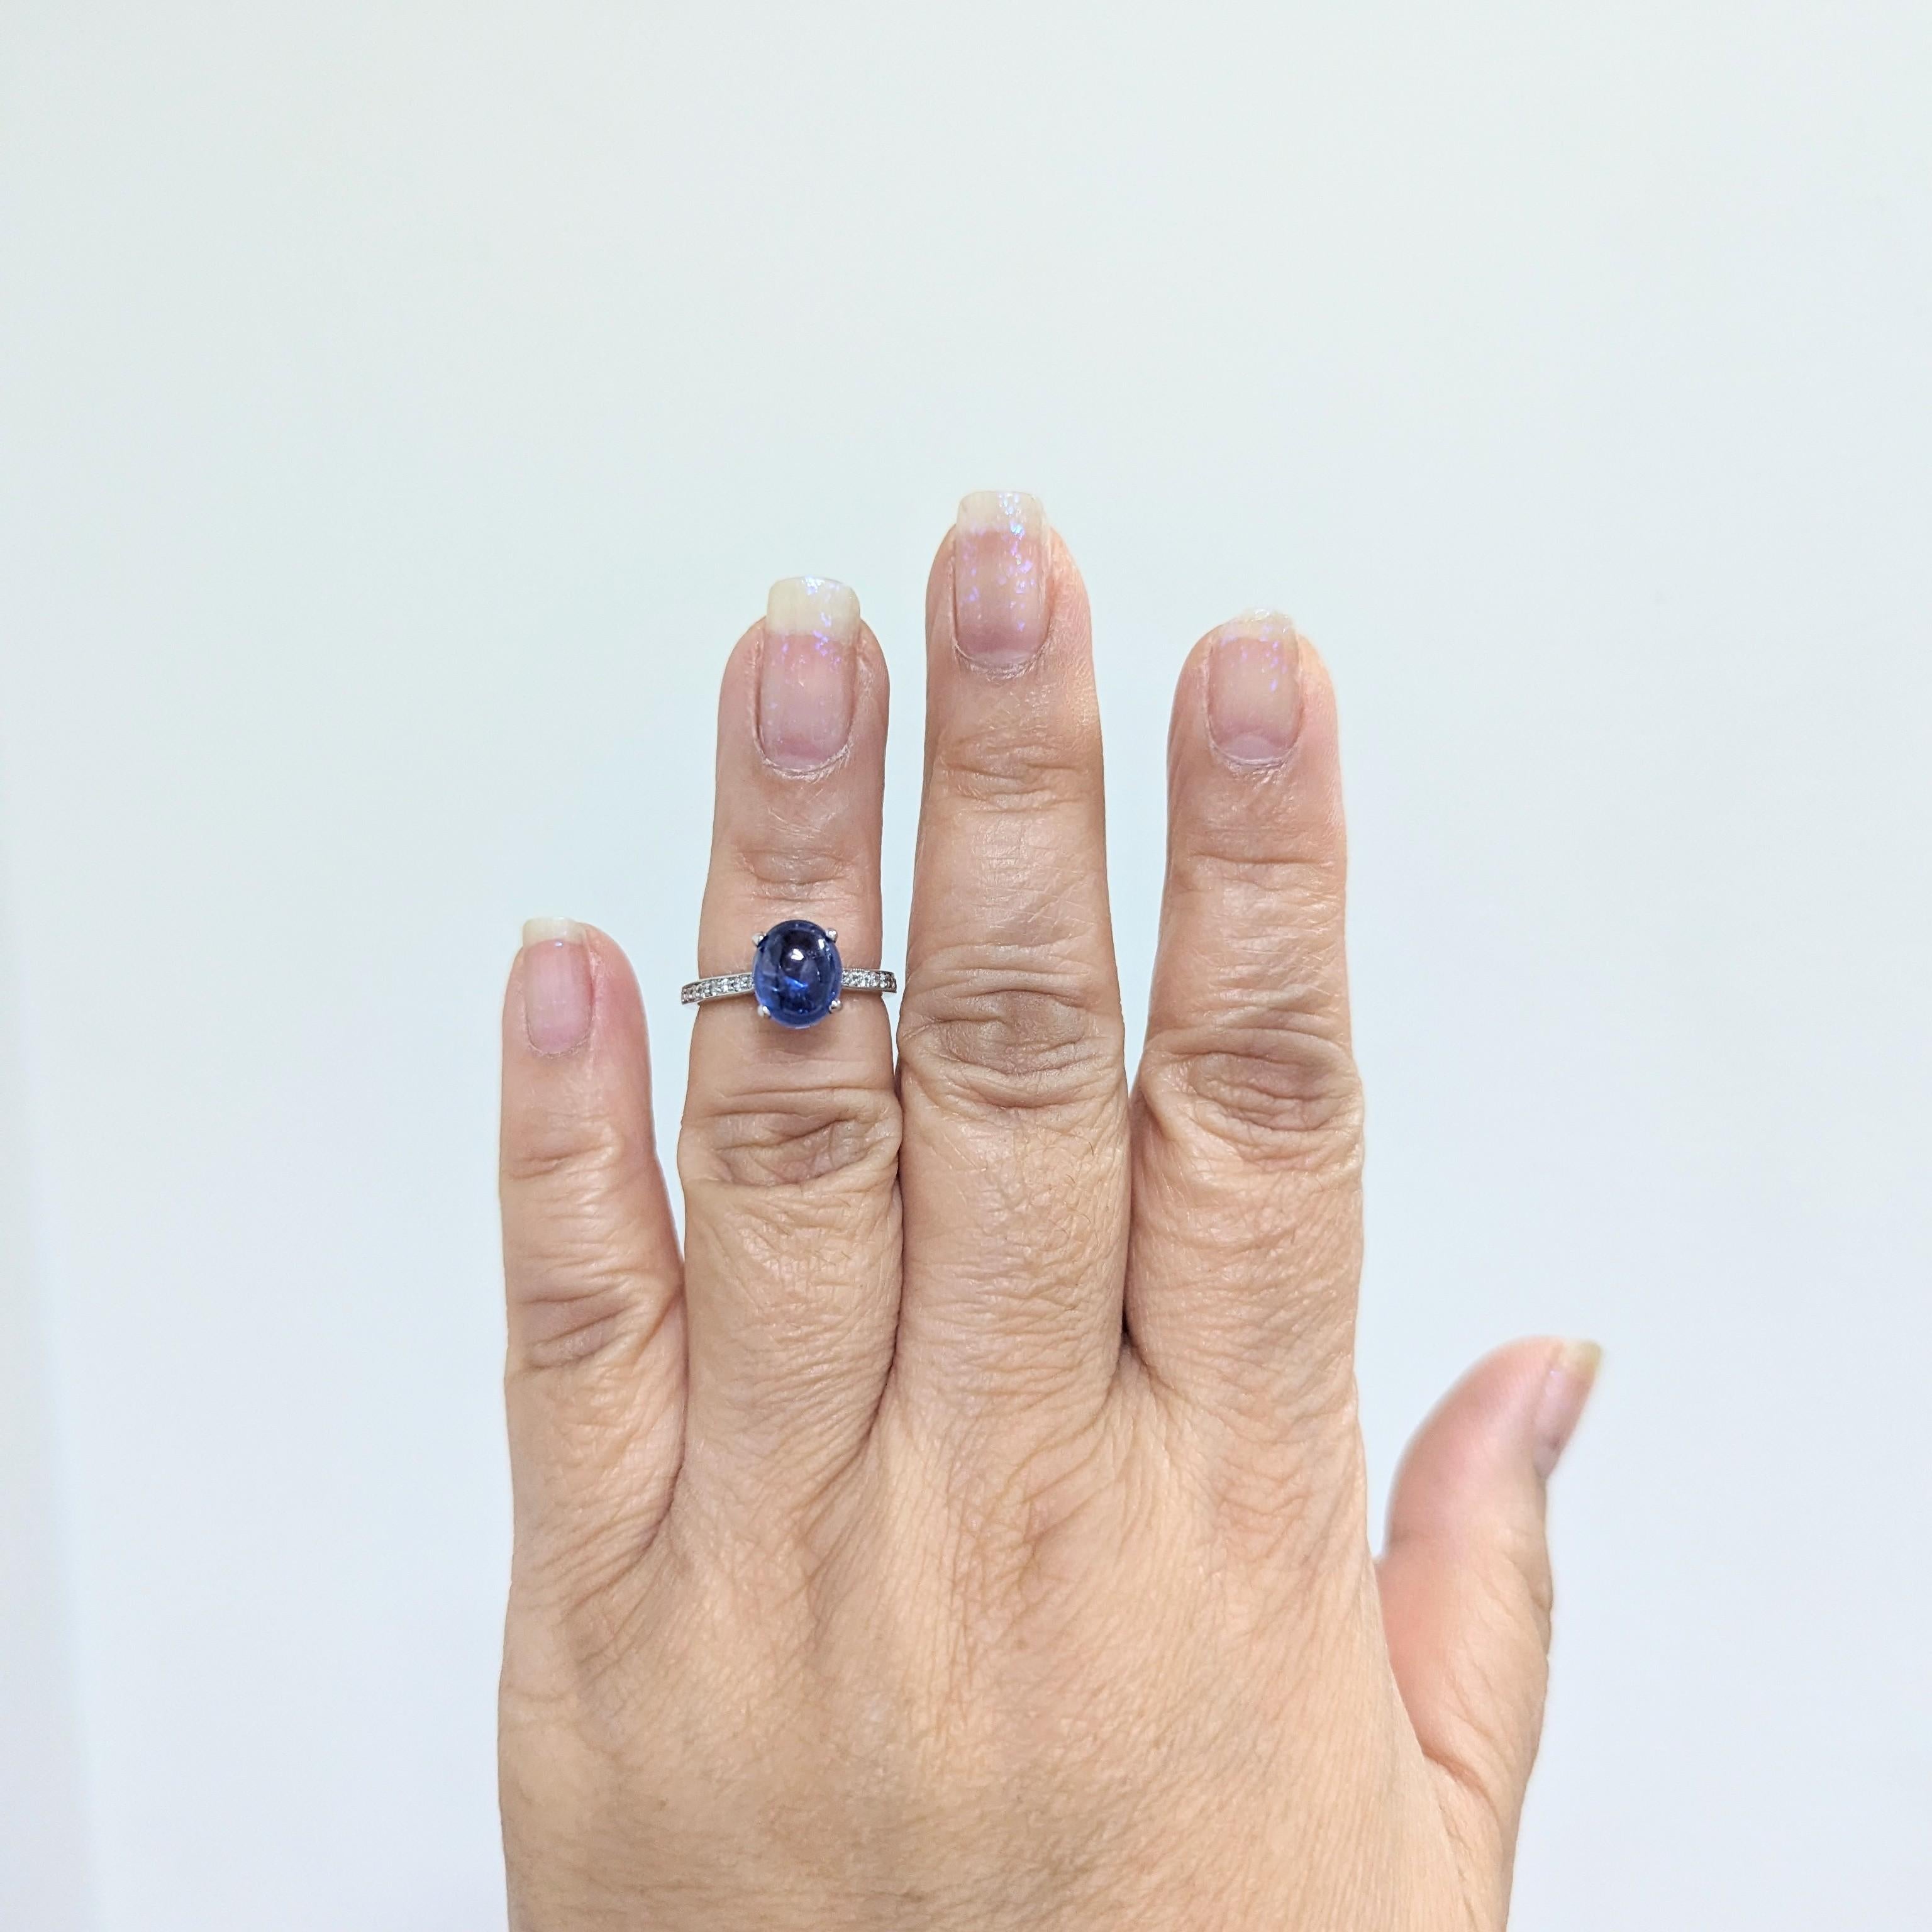 Wunderschöner ovaler Cabochon aus blauem Saphir von 3,53 ct. mit runden weißen Diamanten von 0,05 ct.  Handgefertigt aus 14k Weißgold.  Ring Größe 5,5.